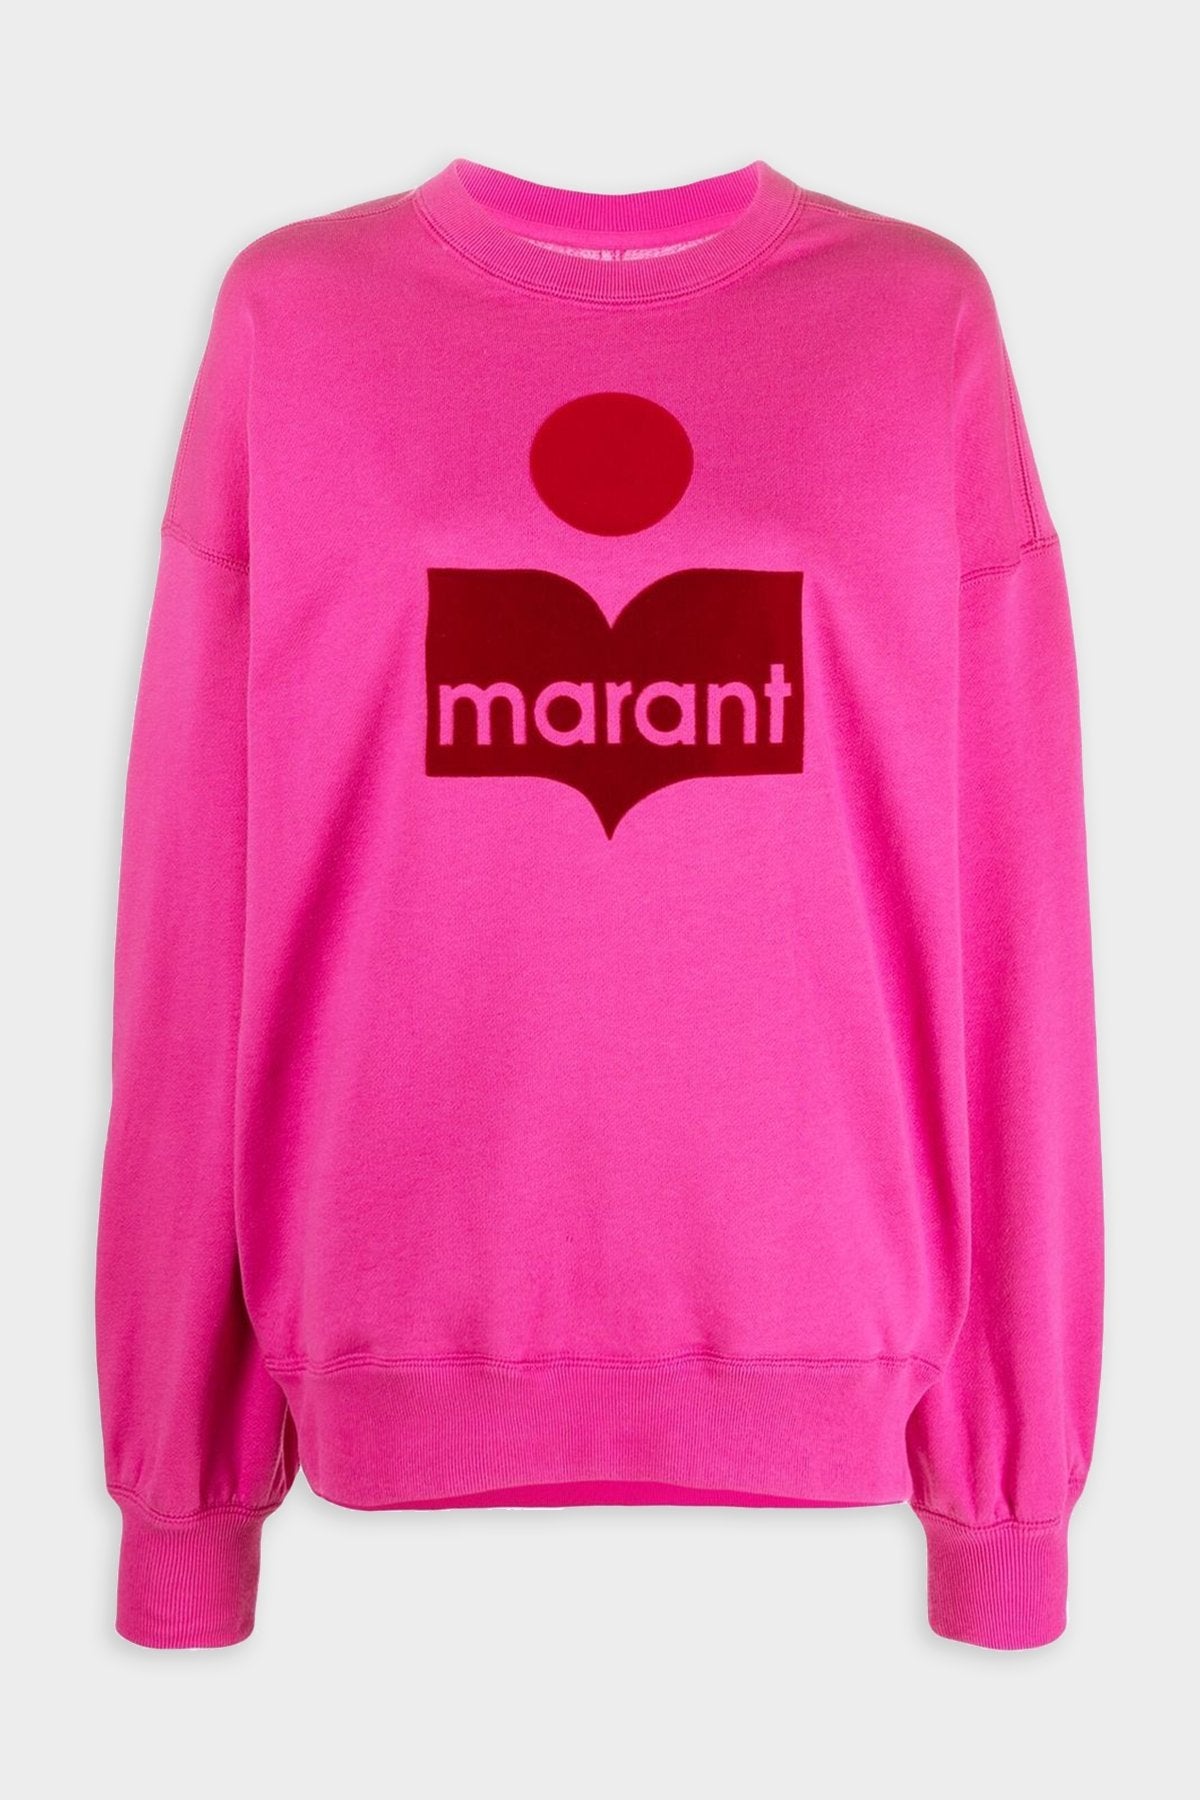 Mindy Sweatshirt in Neon Pink - shop-olivia.com